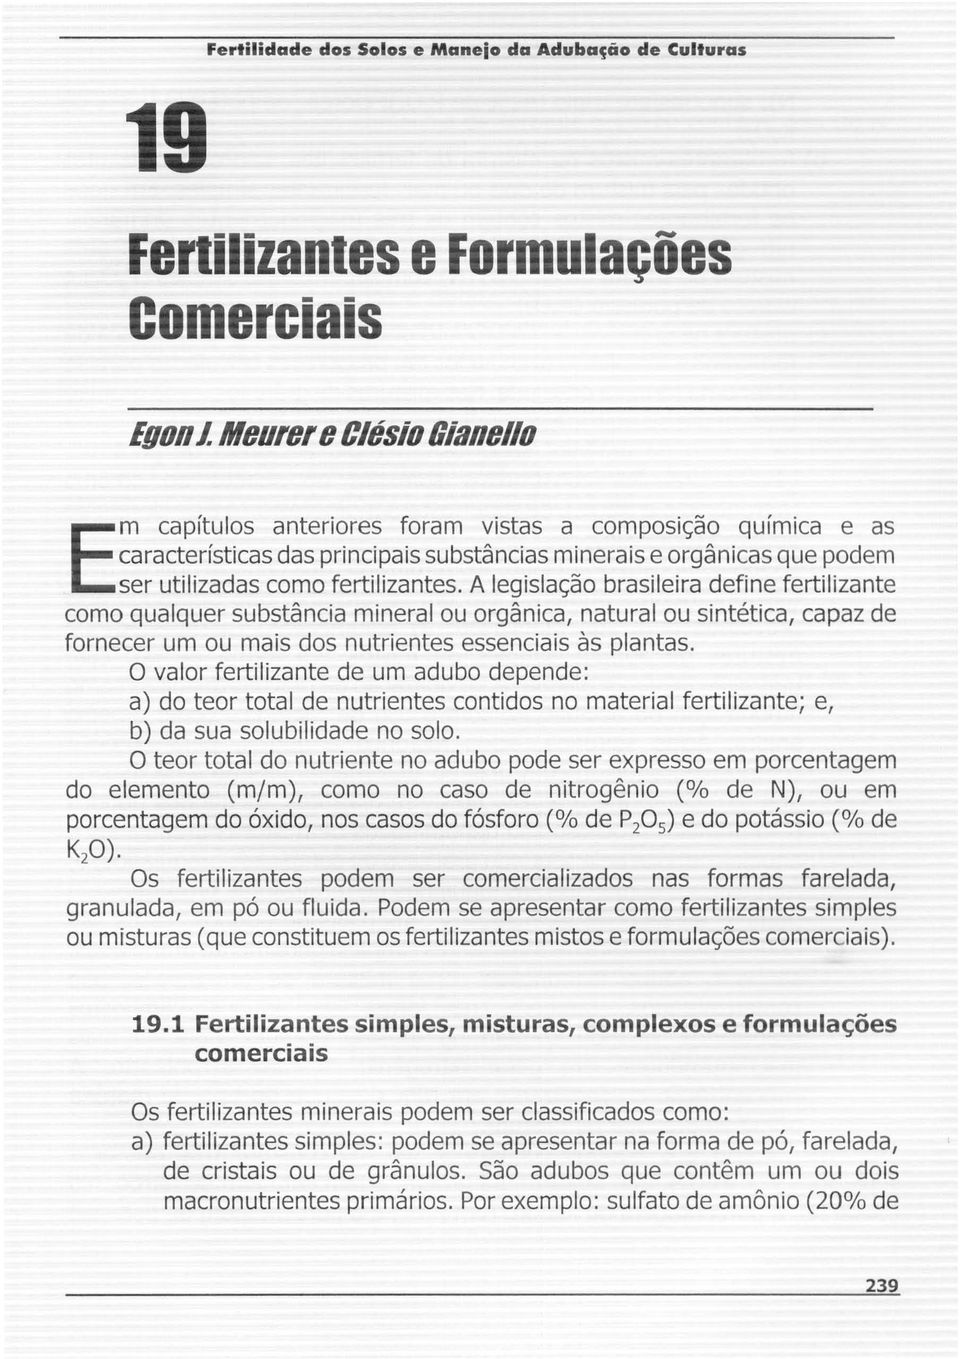 A legislac;ao brasileira define fertilizante como qualquer substancia mineral ou organica, natural ou sintetica, capaz de fornecer um ou mais dos nutrientes essenciais as plantas.